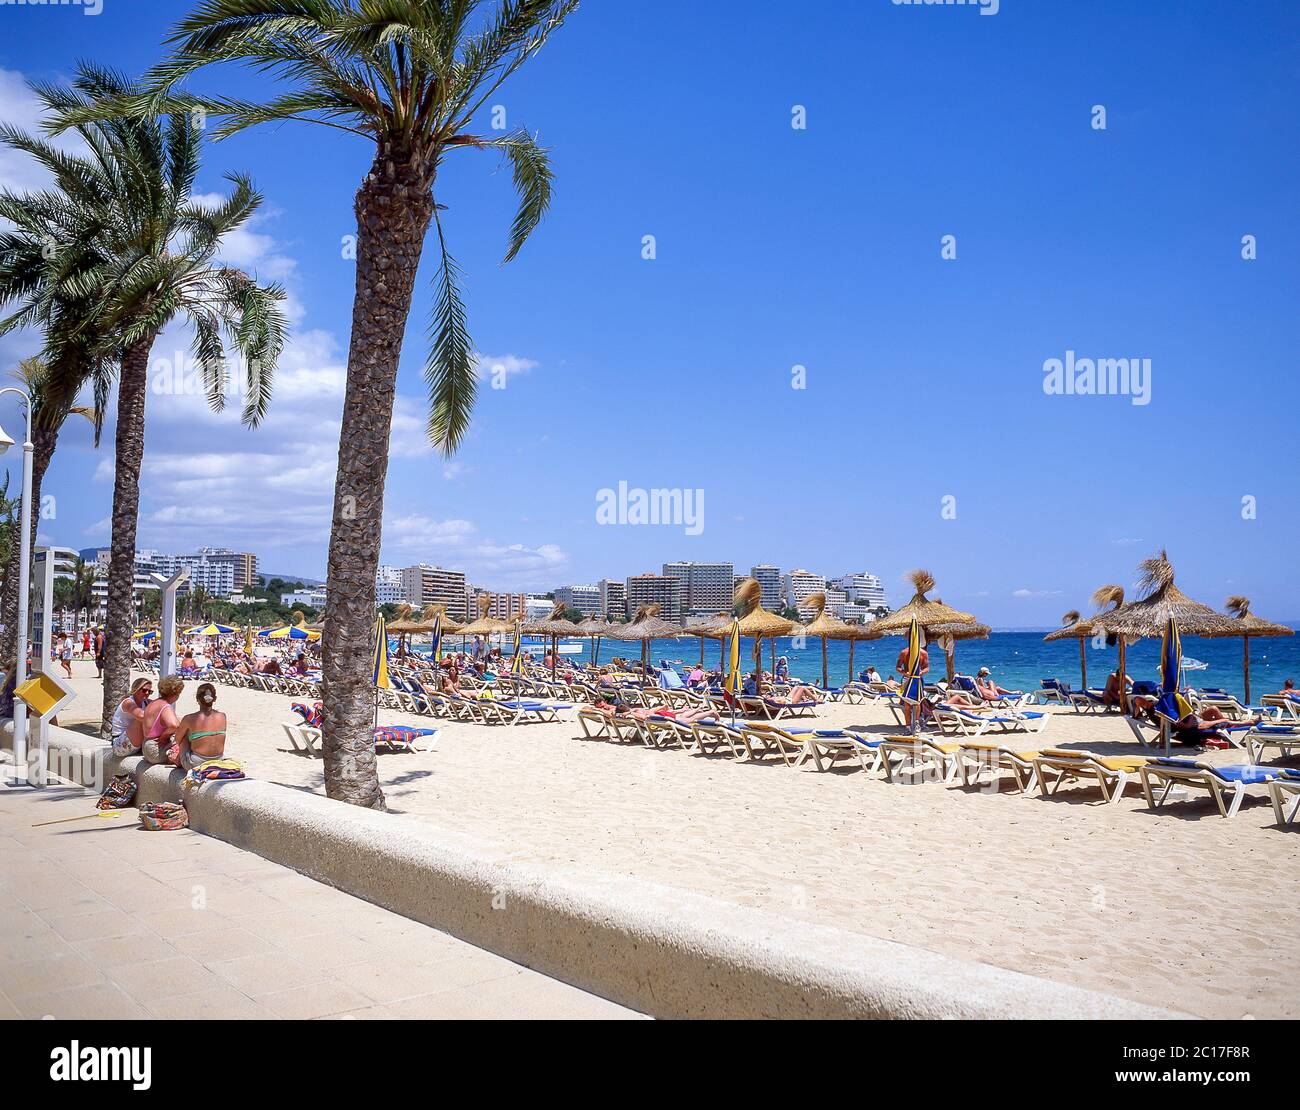 Spiaggia e vista resort, Magaluf, comune di Calvià, Maiorca (Maiorca), Isole Baleari, Spagna Foto Stock